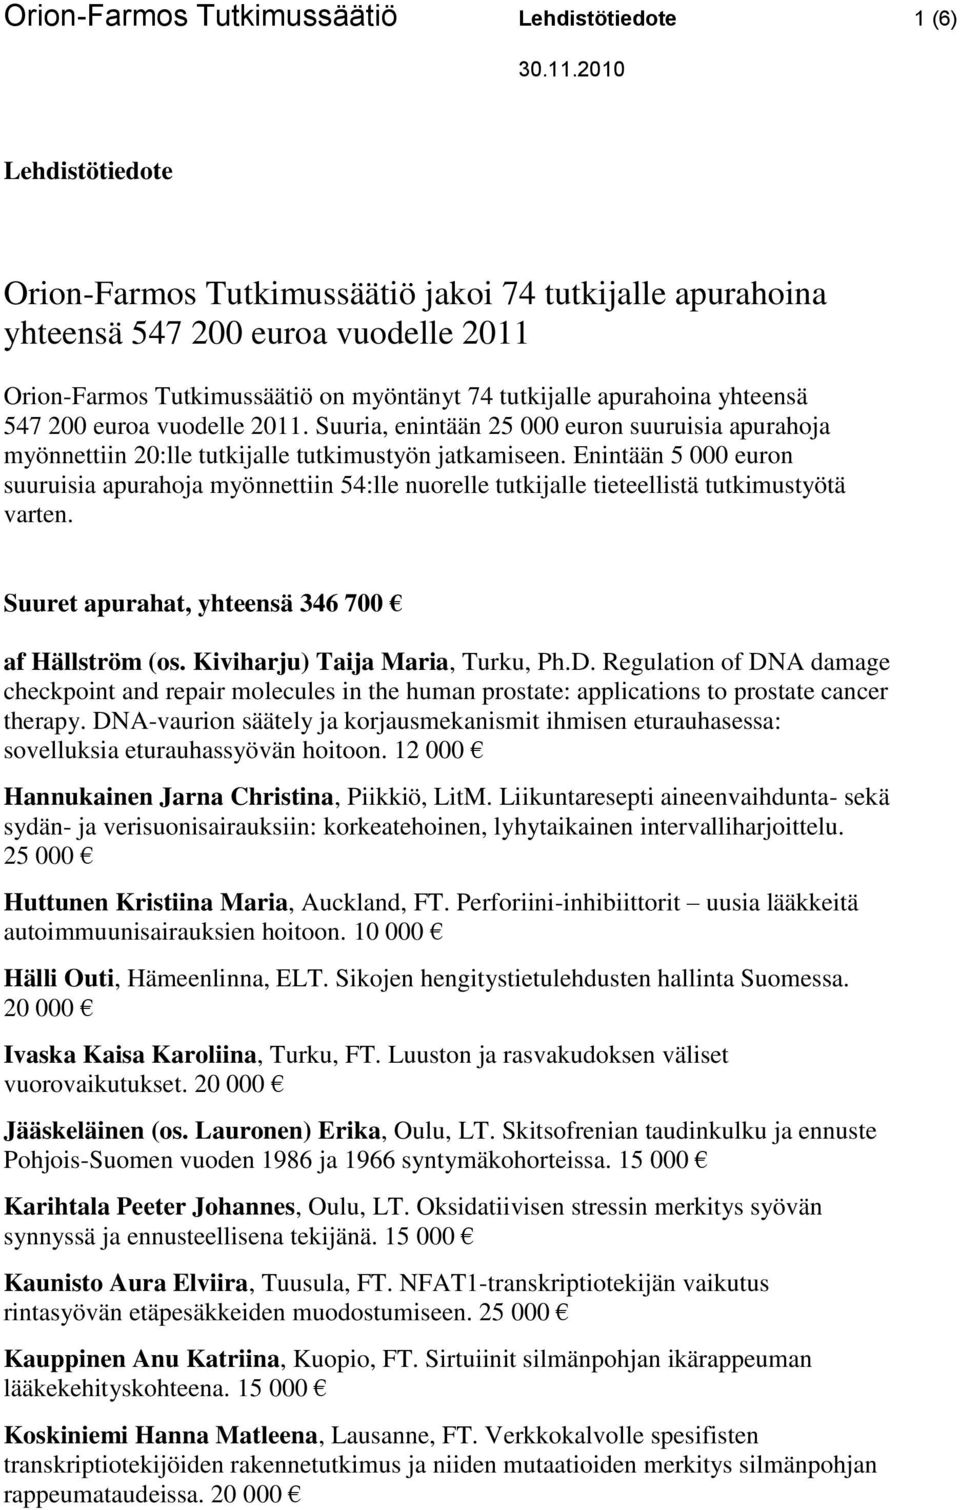 Enintään 5 000 euron suuruisia apurahoja myönnettiin 54:lle nuorelle tutkijalle tieteellistä tutkimustyötä varten. Suuret apurahat, yhteensä 346 700 af Hällström (os.